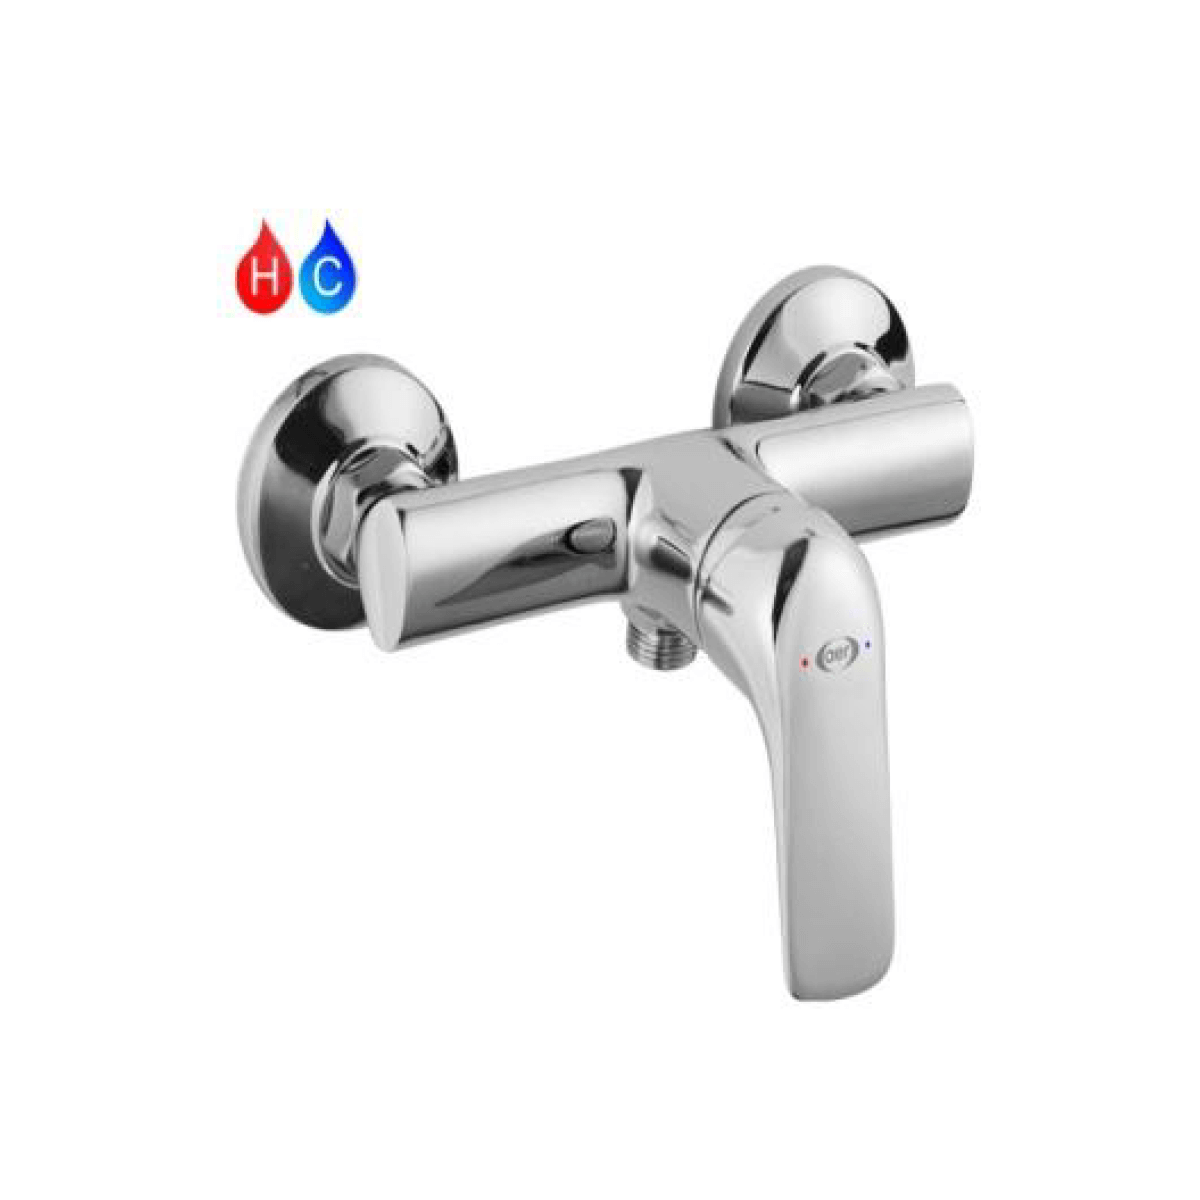 AER Brass Mixer Shower Faucet (SAM SP1)